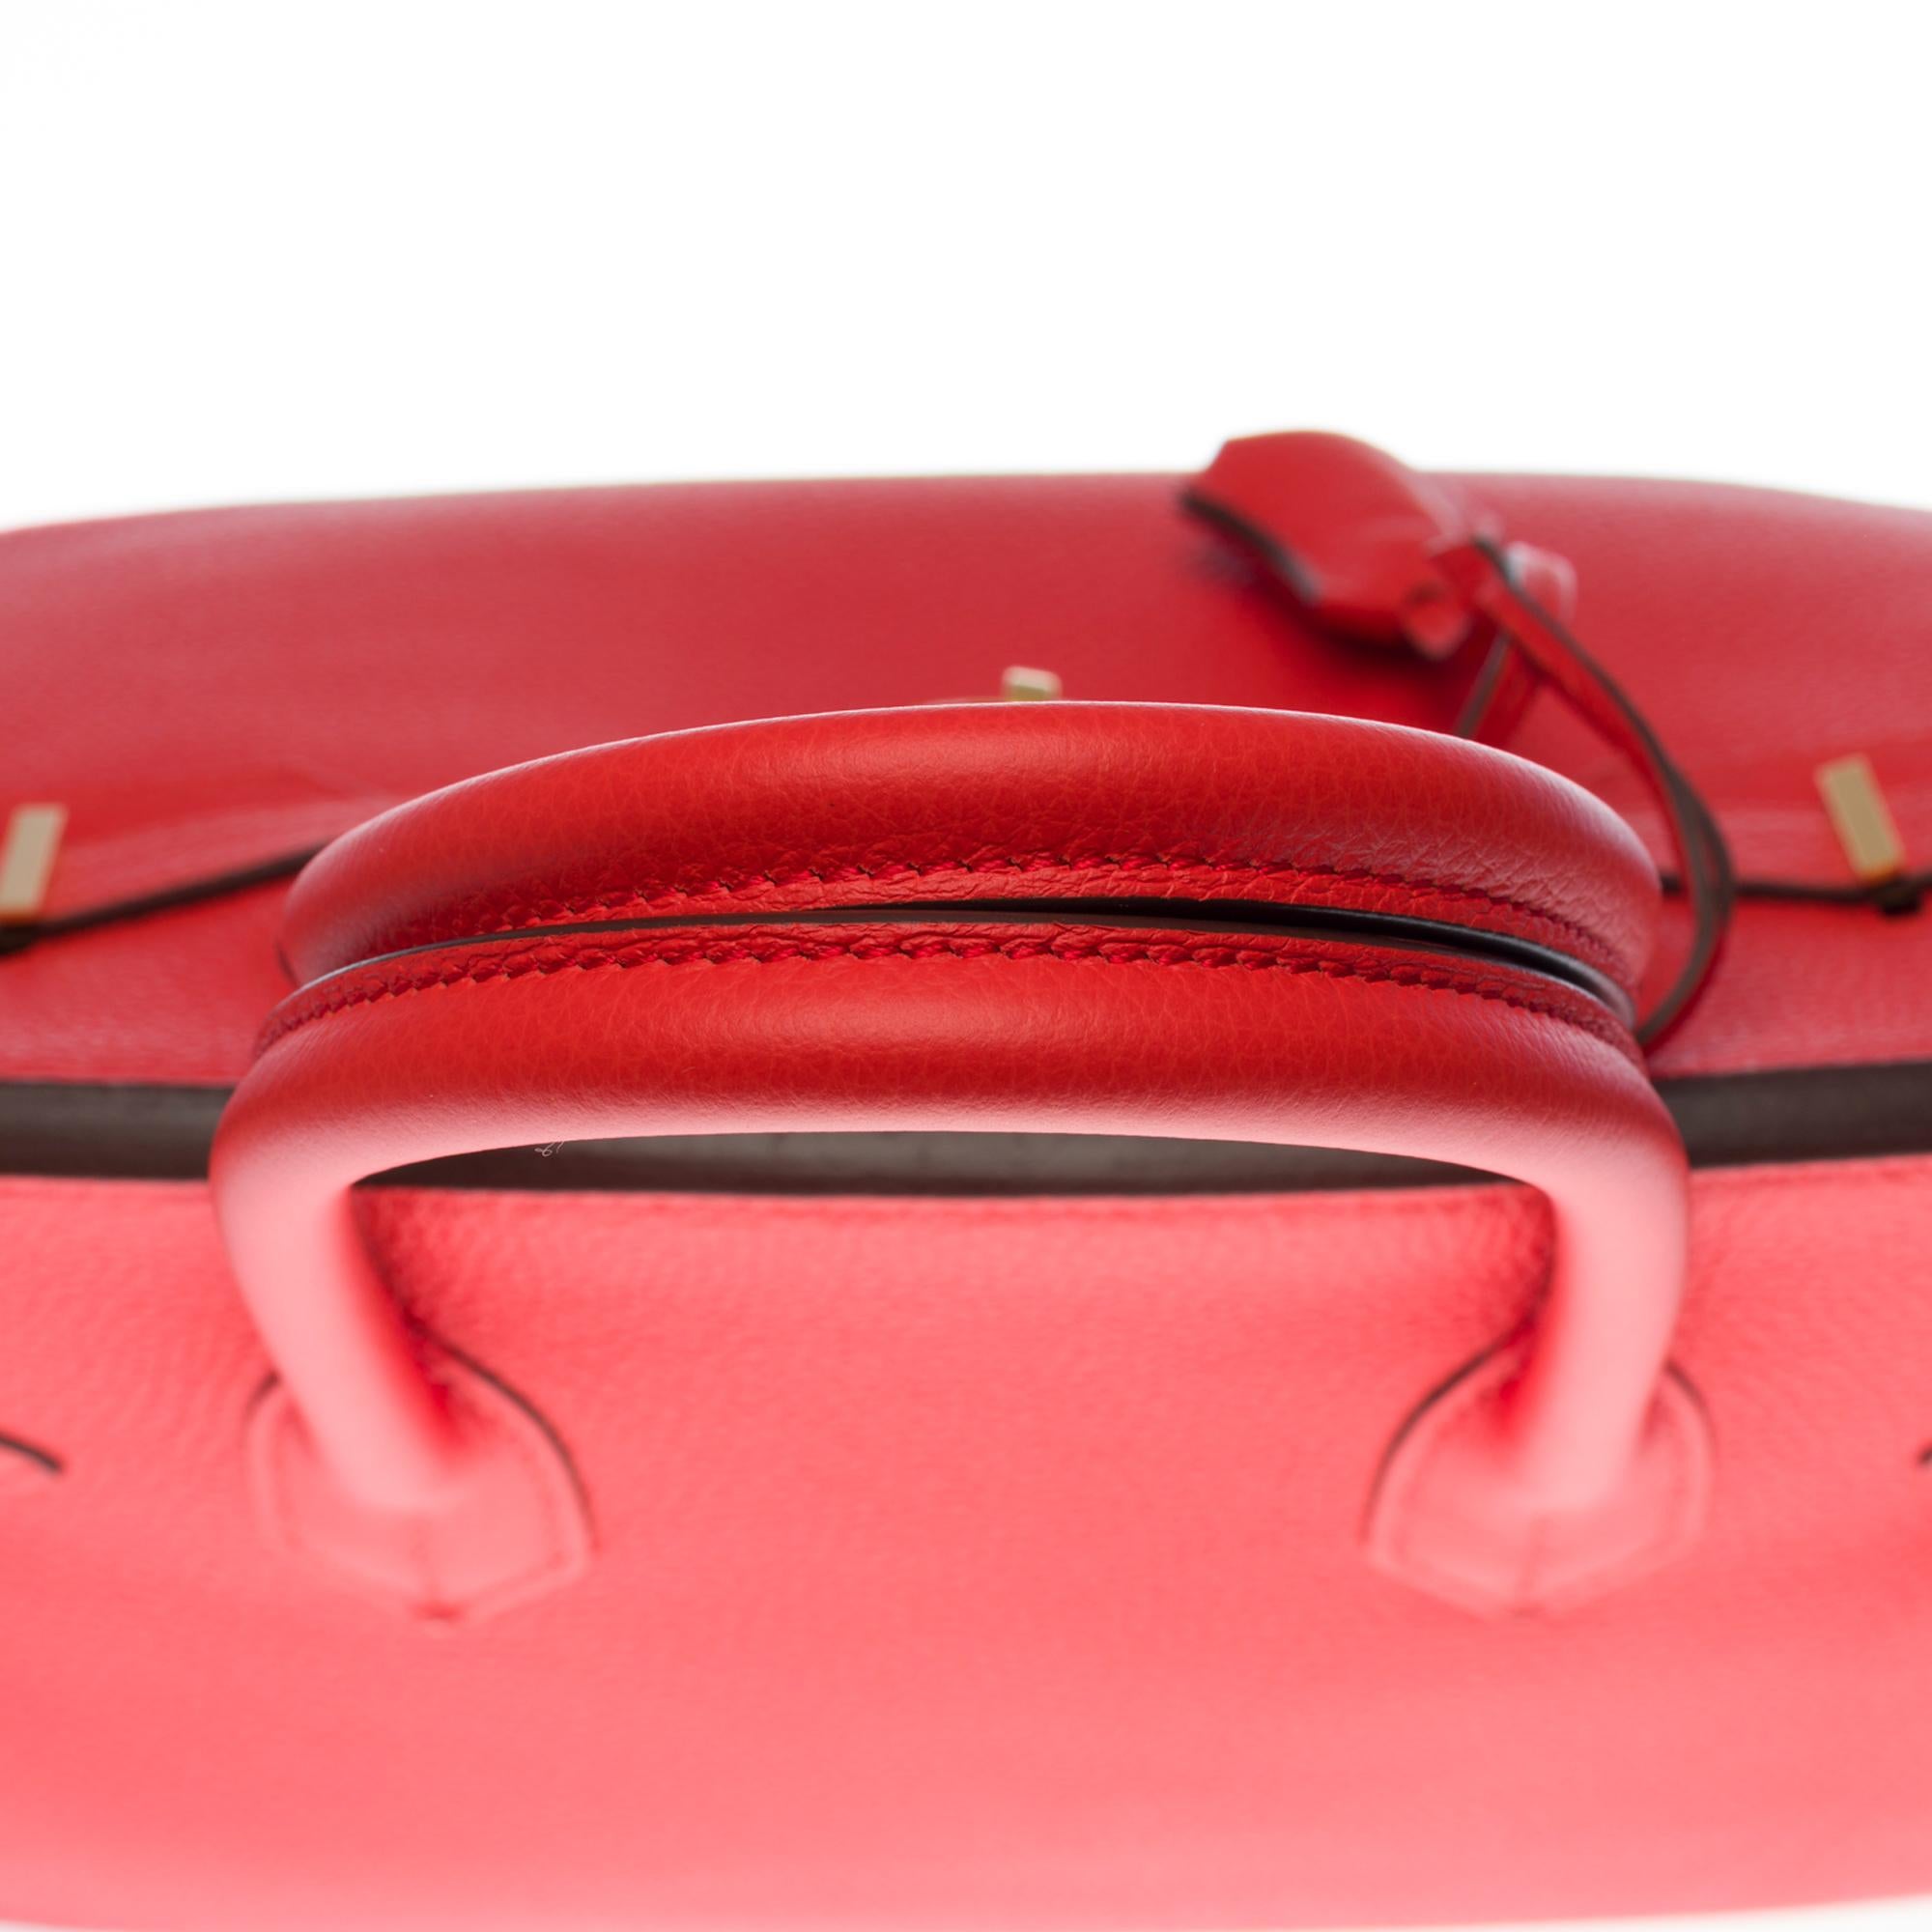 Stunning Hermès Birkin 30 handbag in Rouge Capucine Togo leather, GHW 3